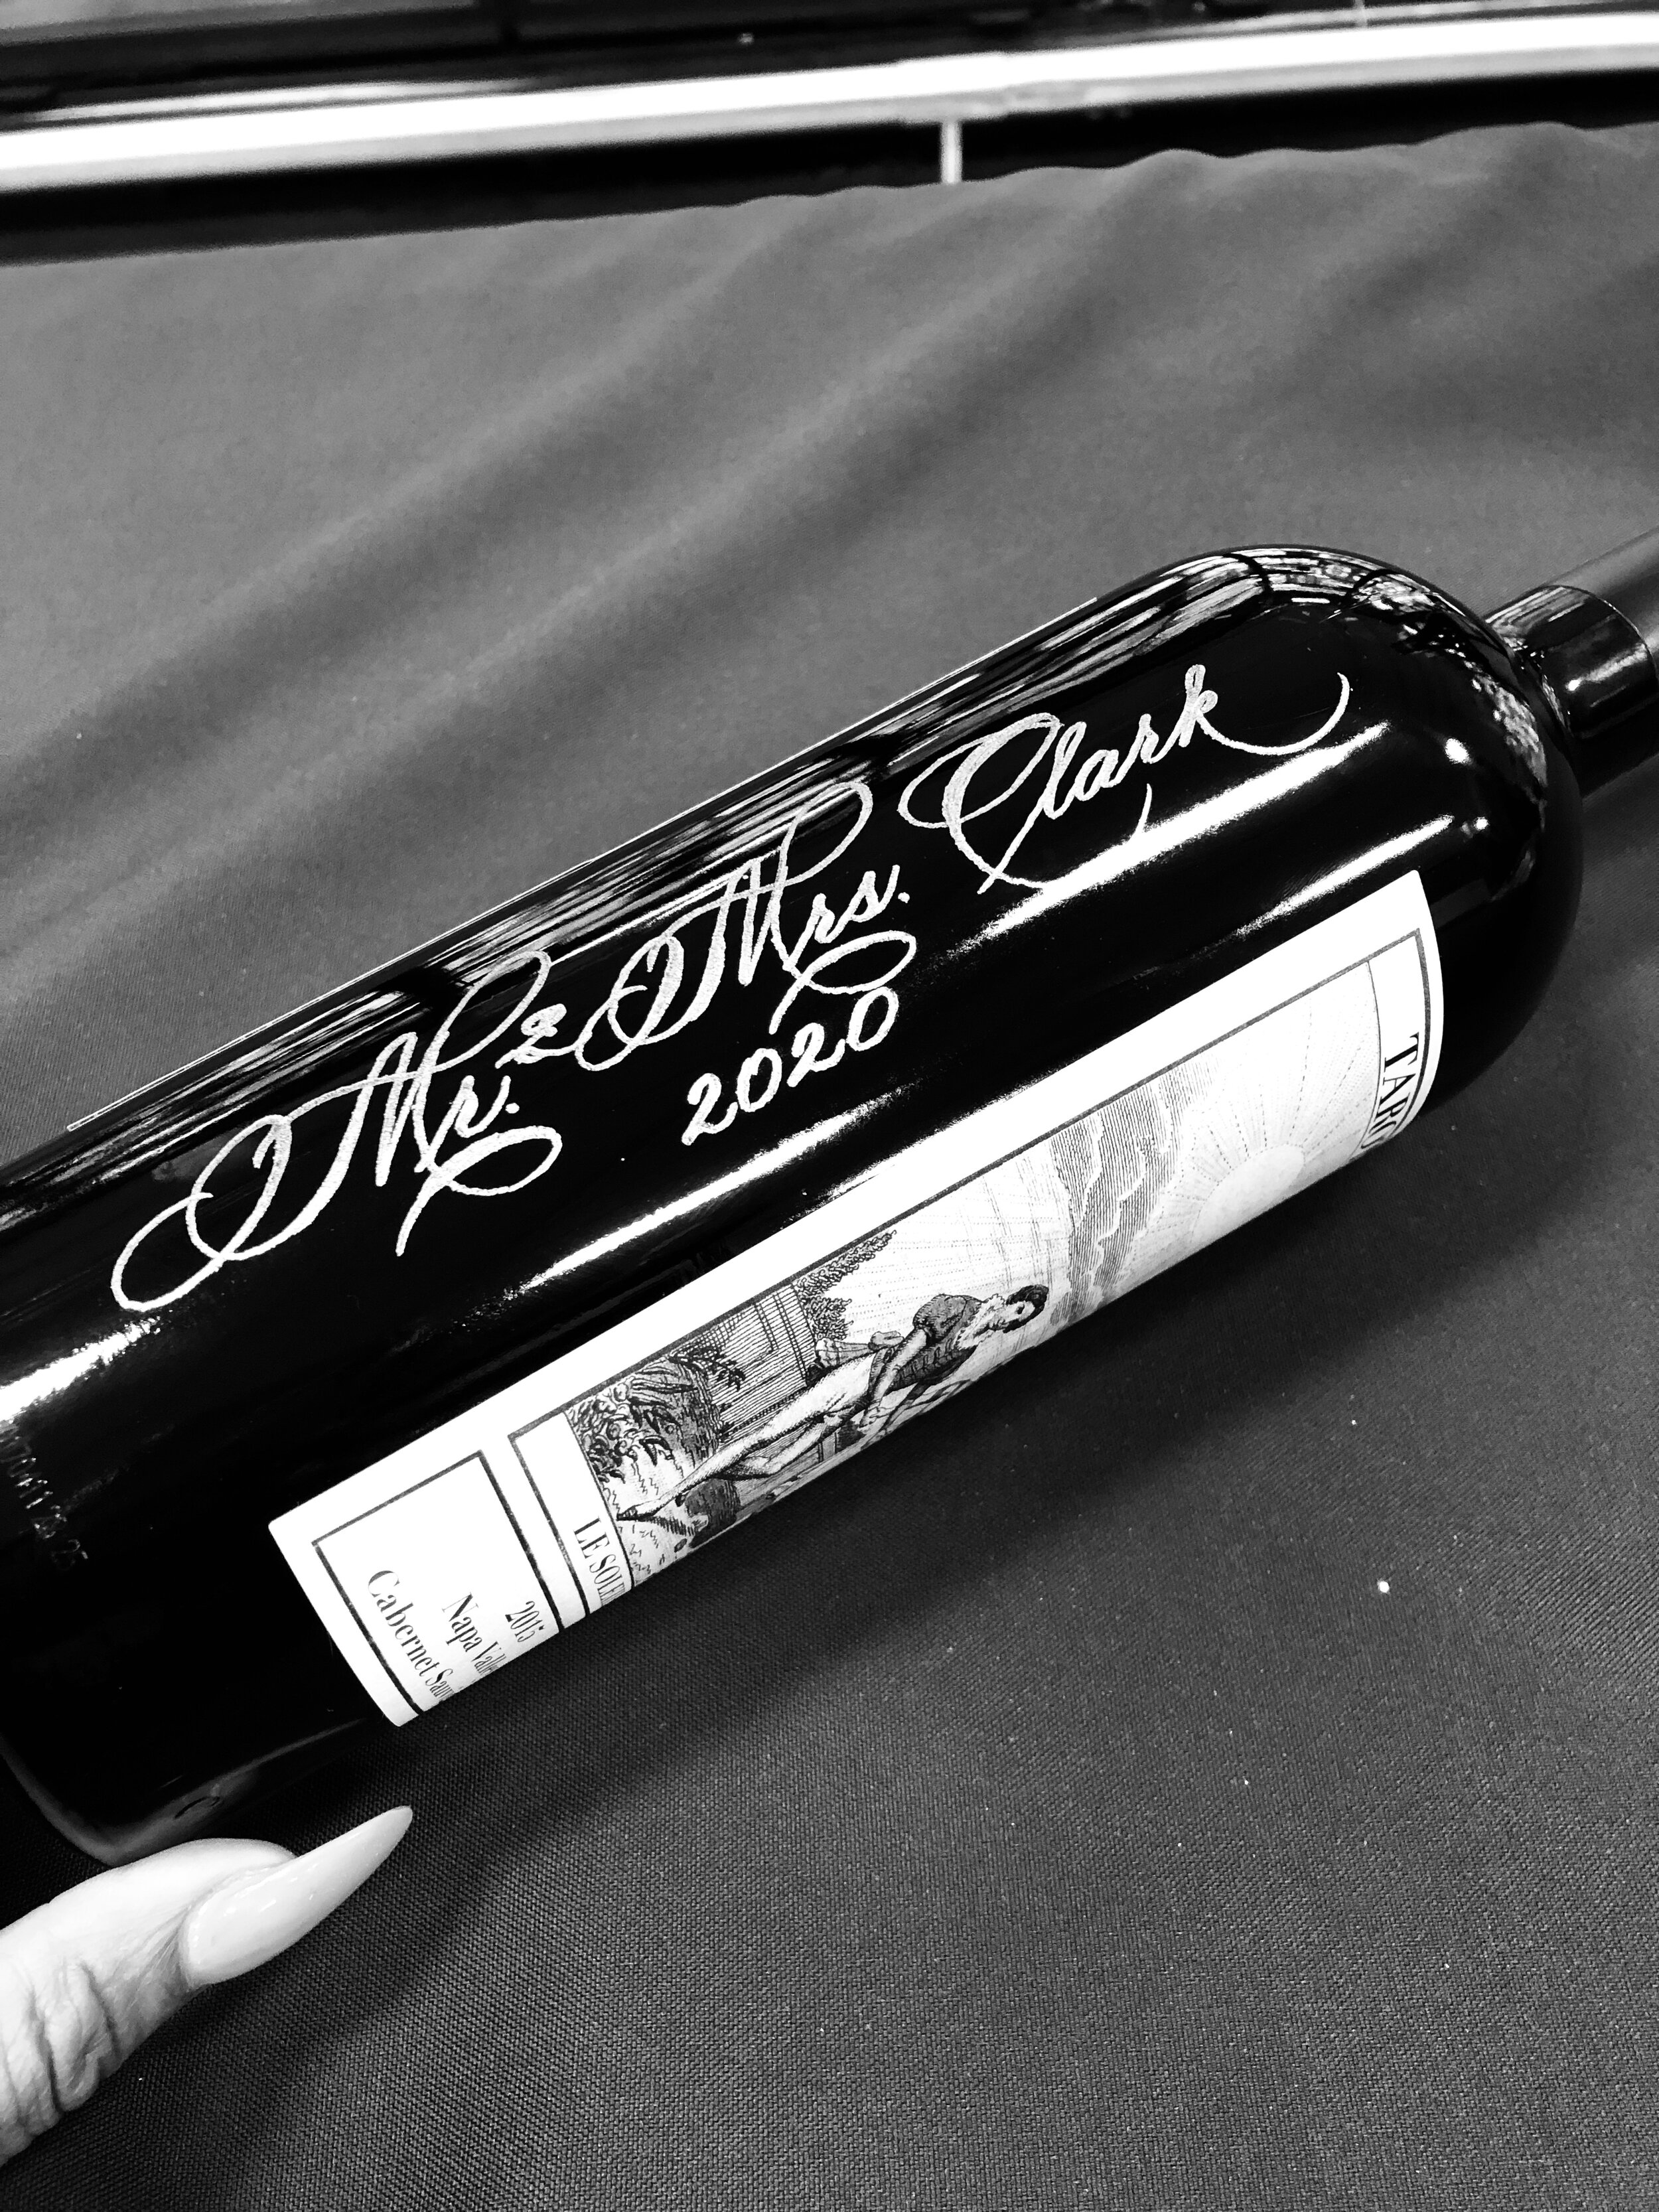 Wine bottle engraving houston.jpg